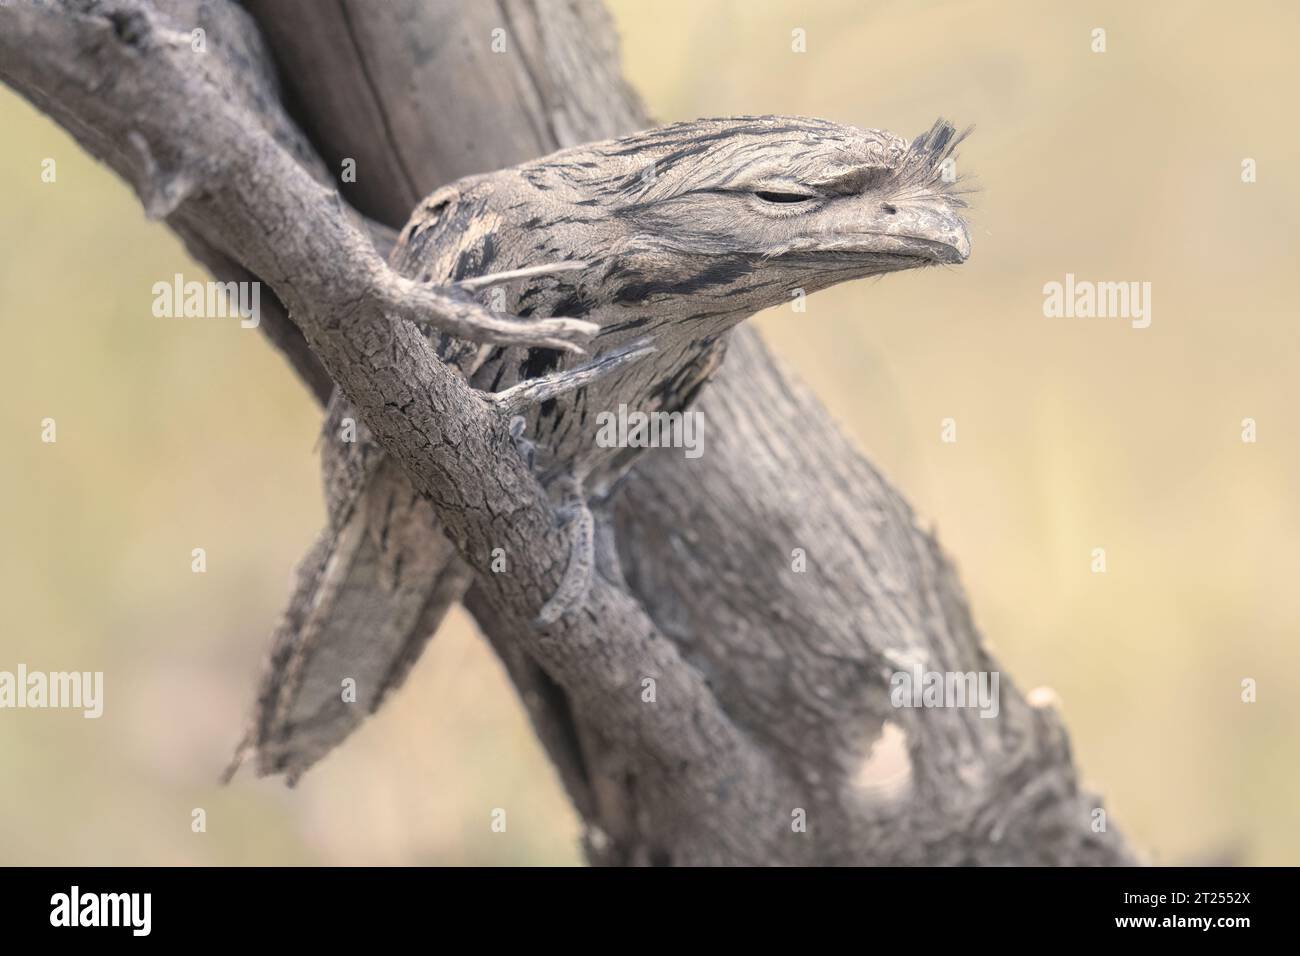 Gibier tawny (Podargus strigoides) perché sur une branche, Australie Banque D'Images